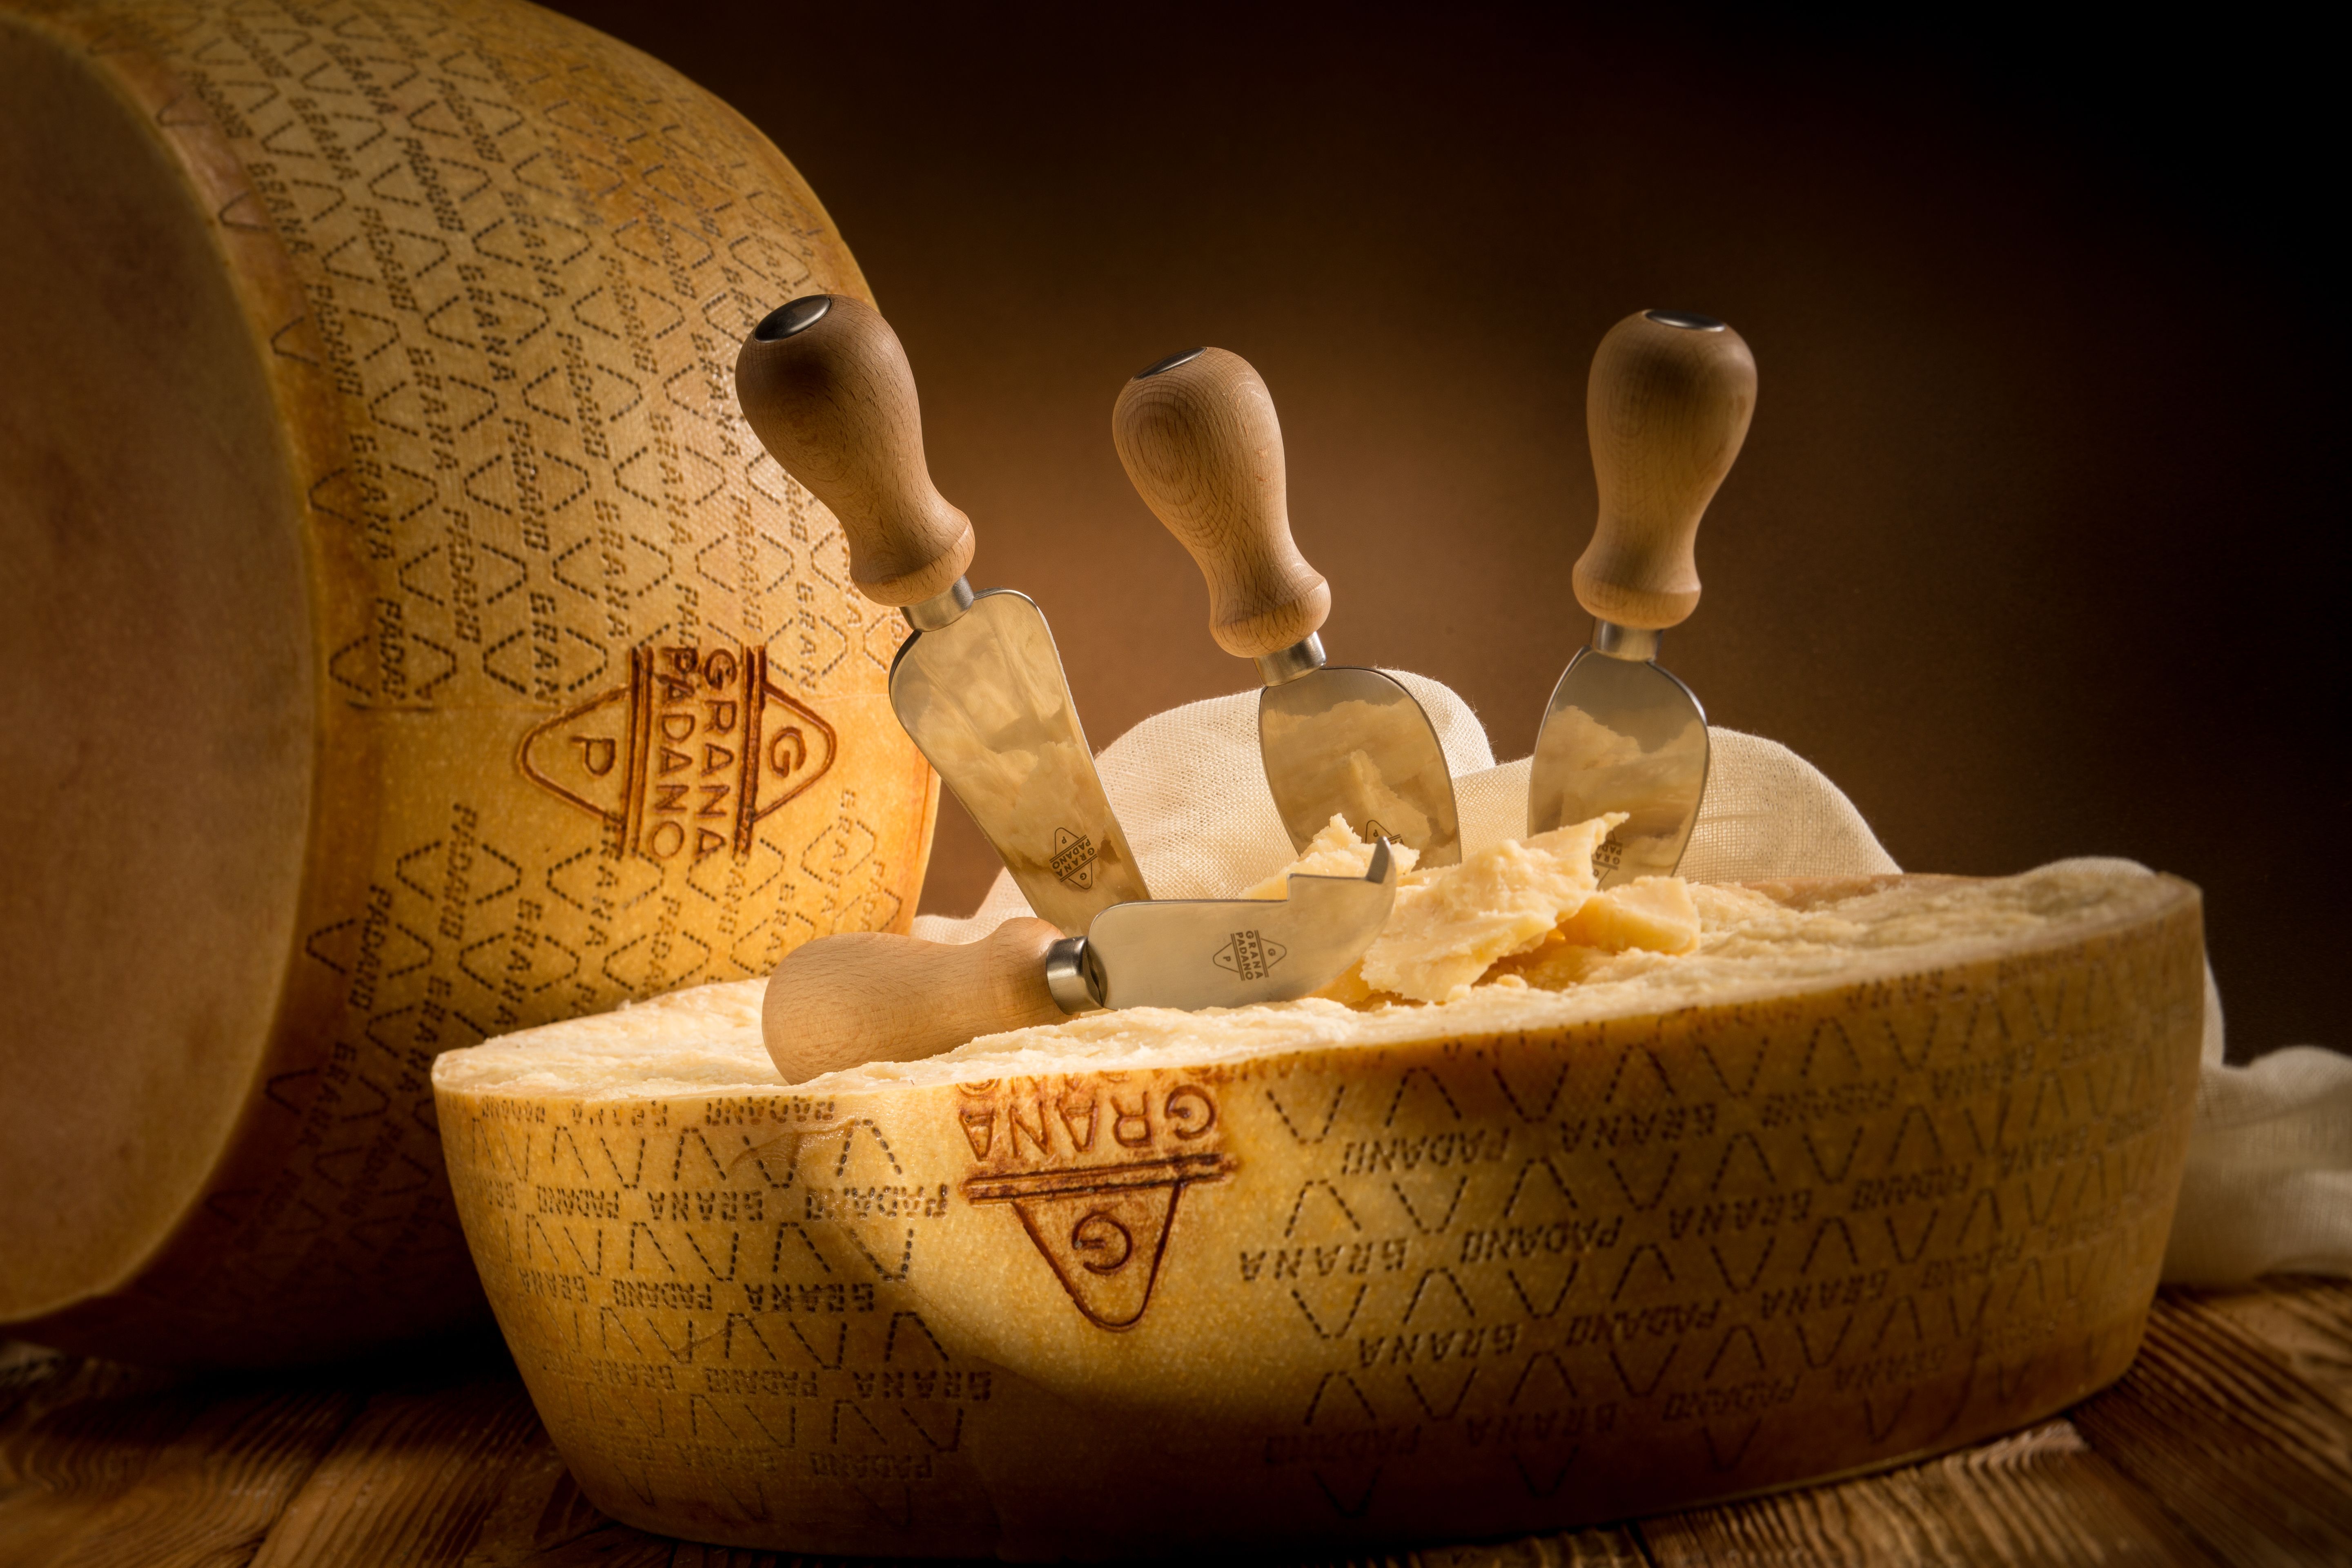 The Making of Grana Padano cheese